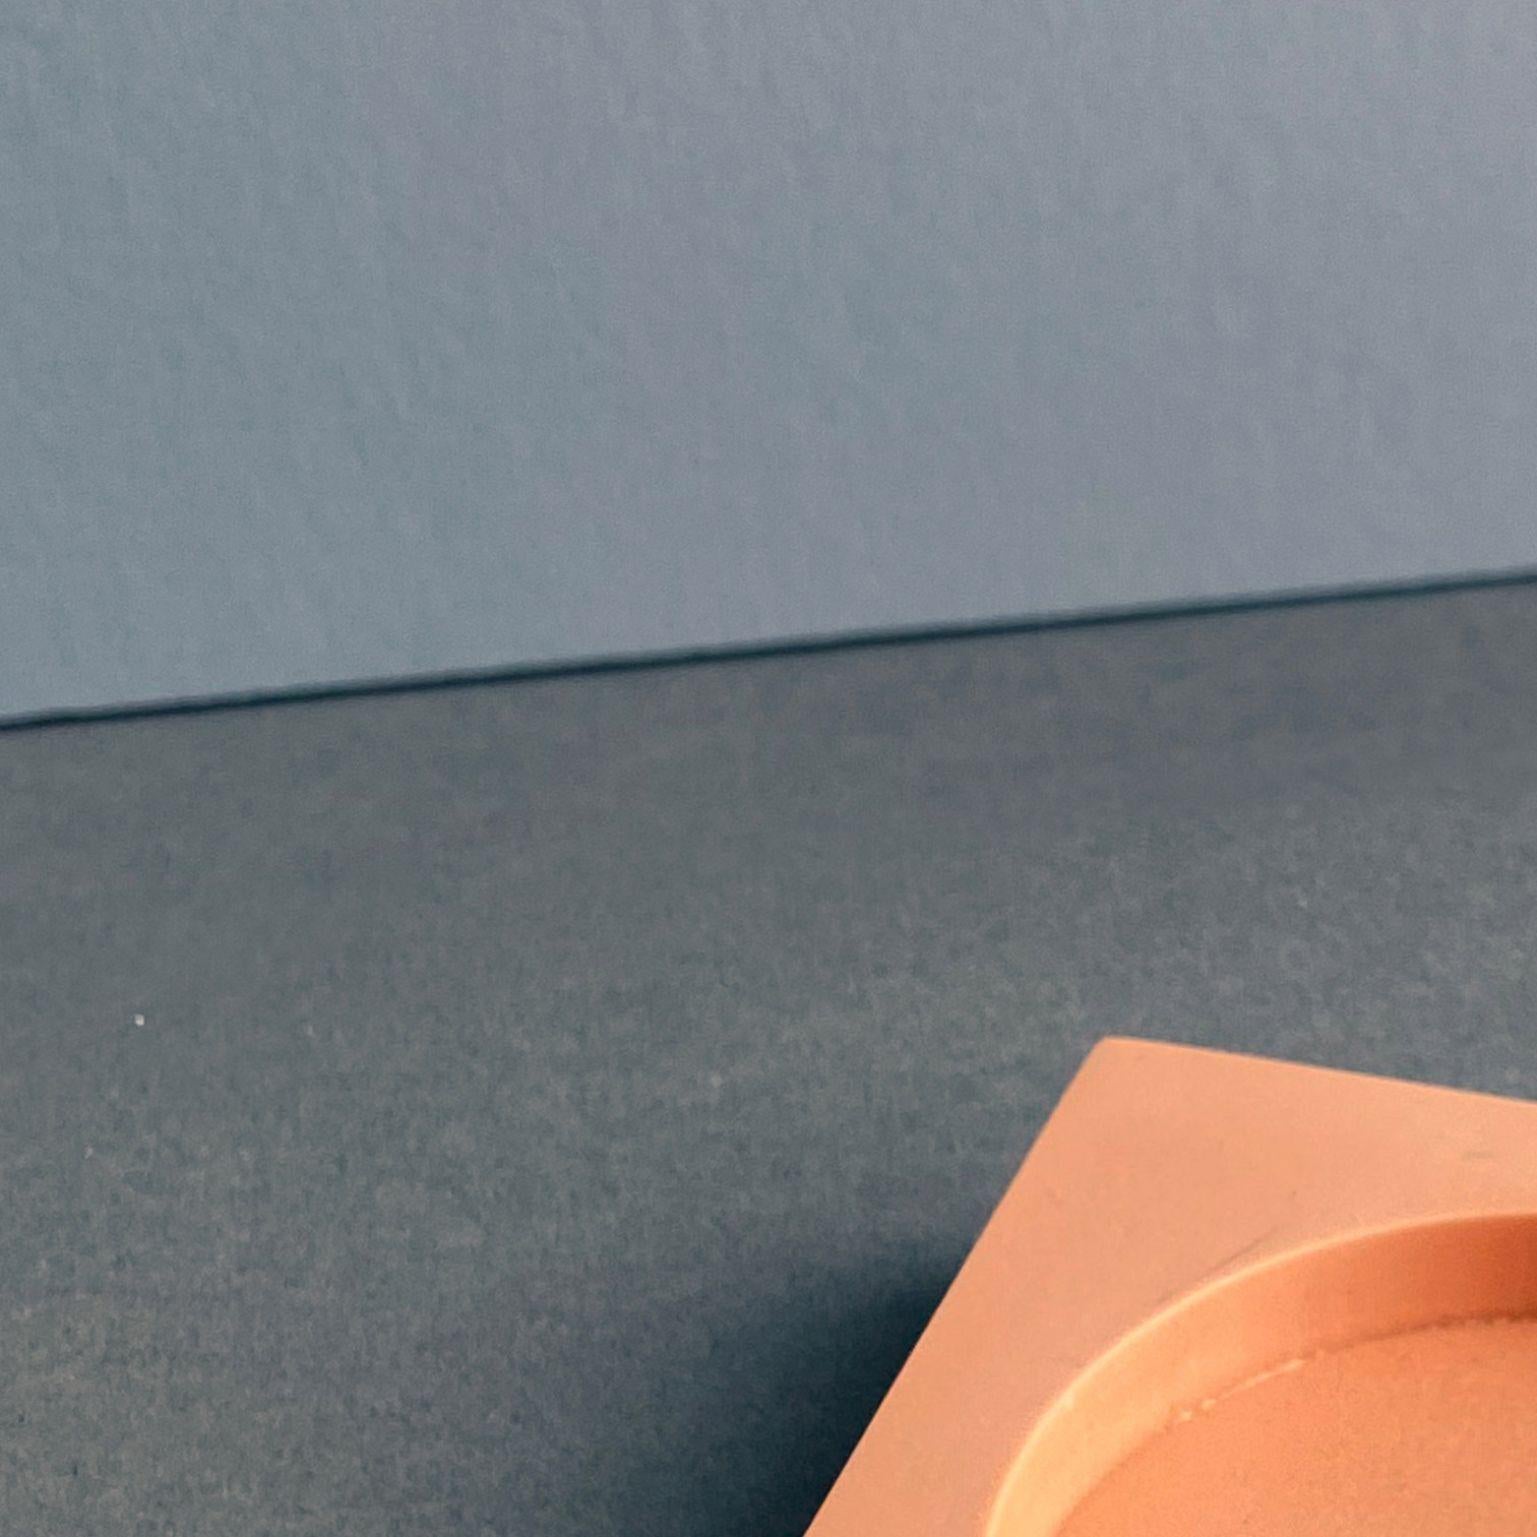 Modern Peach Bowl Mould Project by Theodora Alfredsdottir